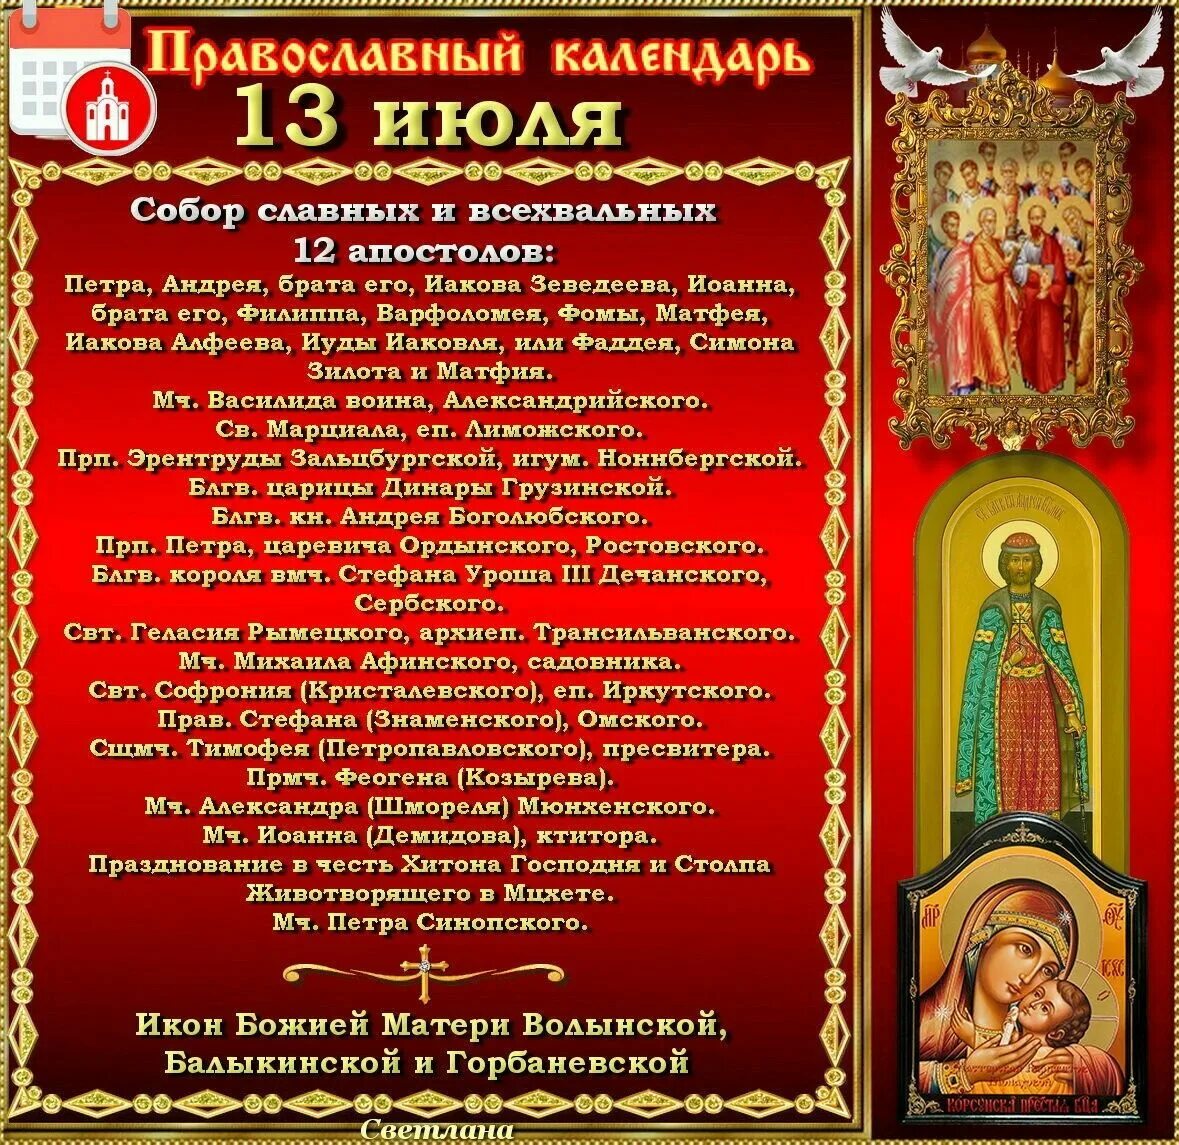 13 апреля православный календарь. Двенадцать апостолов 13 июля. 13 Июля народный календарь. 13 Июля праздник. Православный календарь.